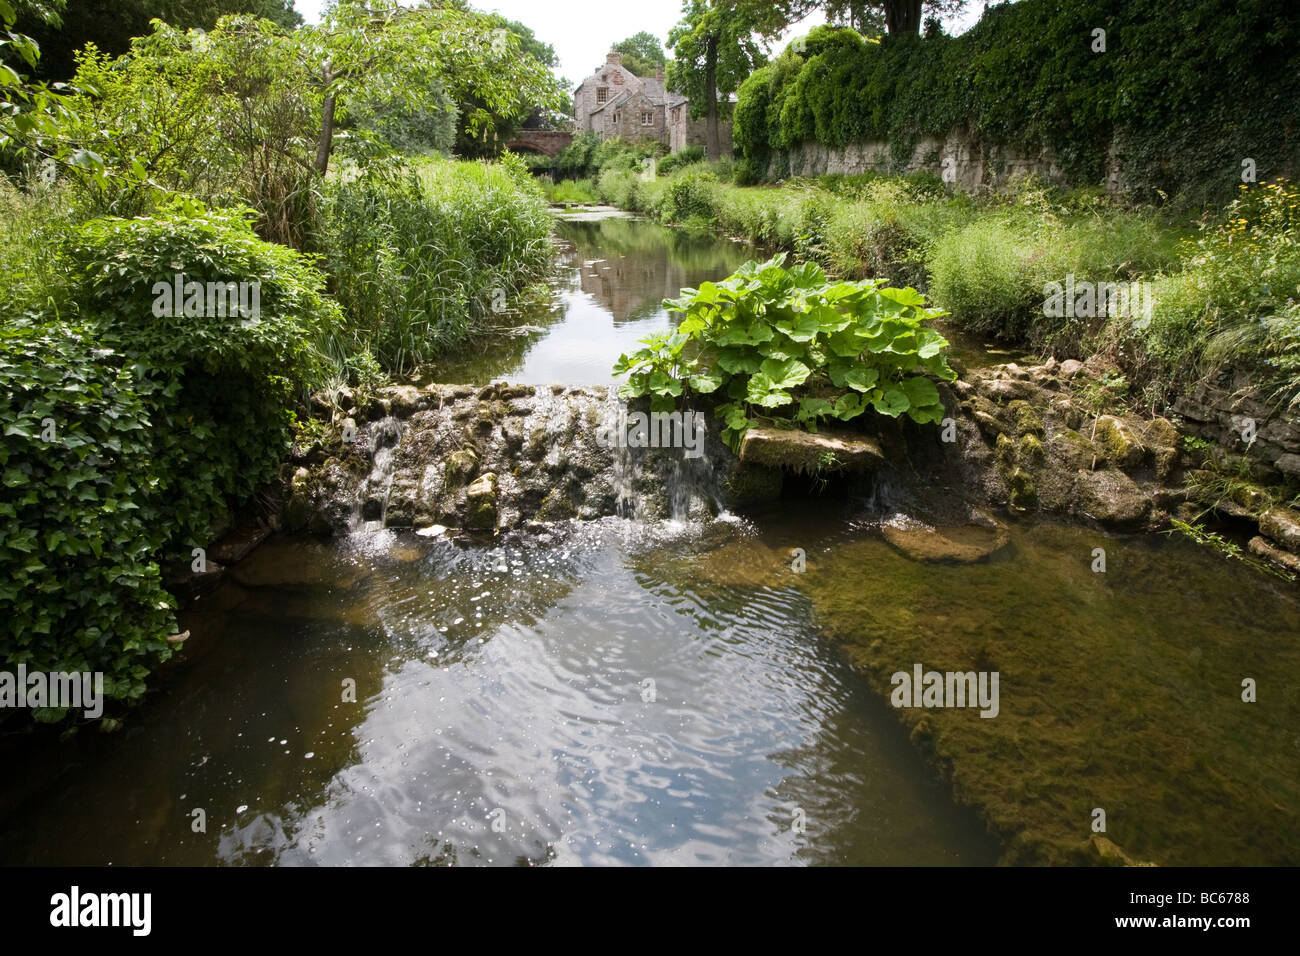 Vista a lo largo de stream bordeadas de árboles y arbustos y darmera peltata crece sobre una piedra en un azud English country garden UK Foto de stock